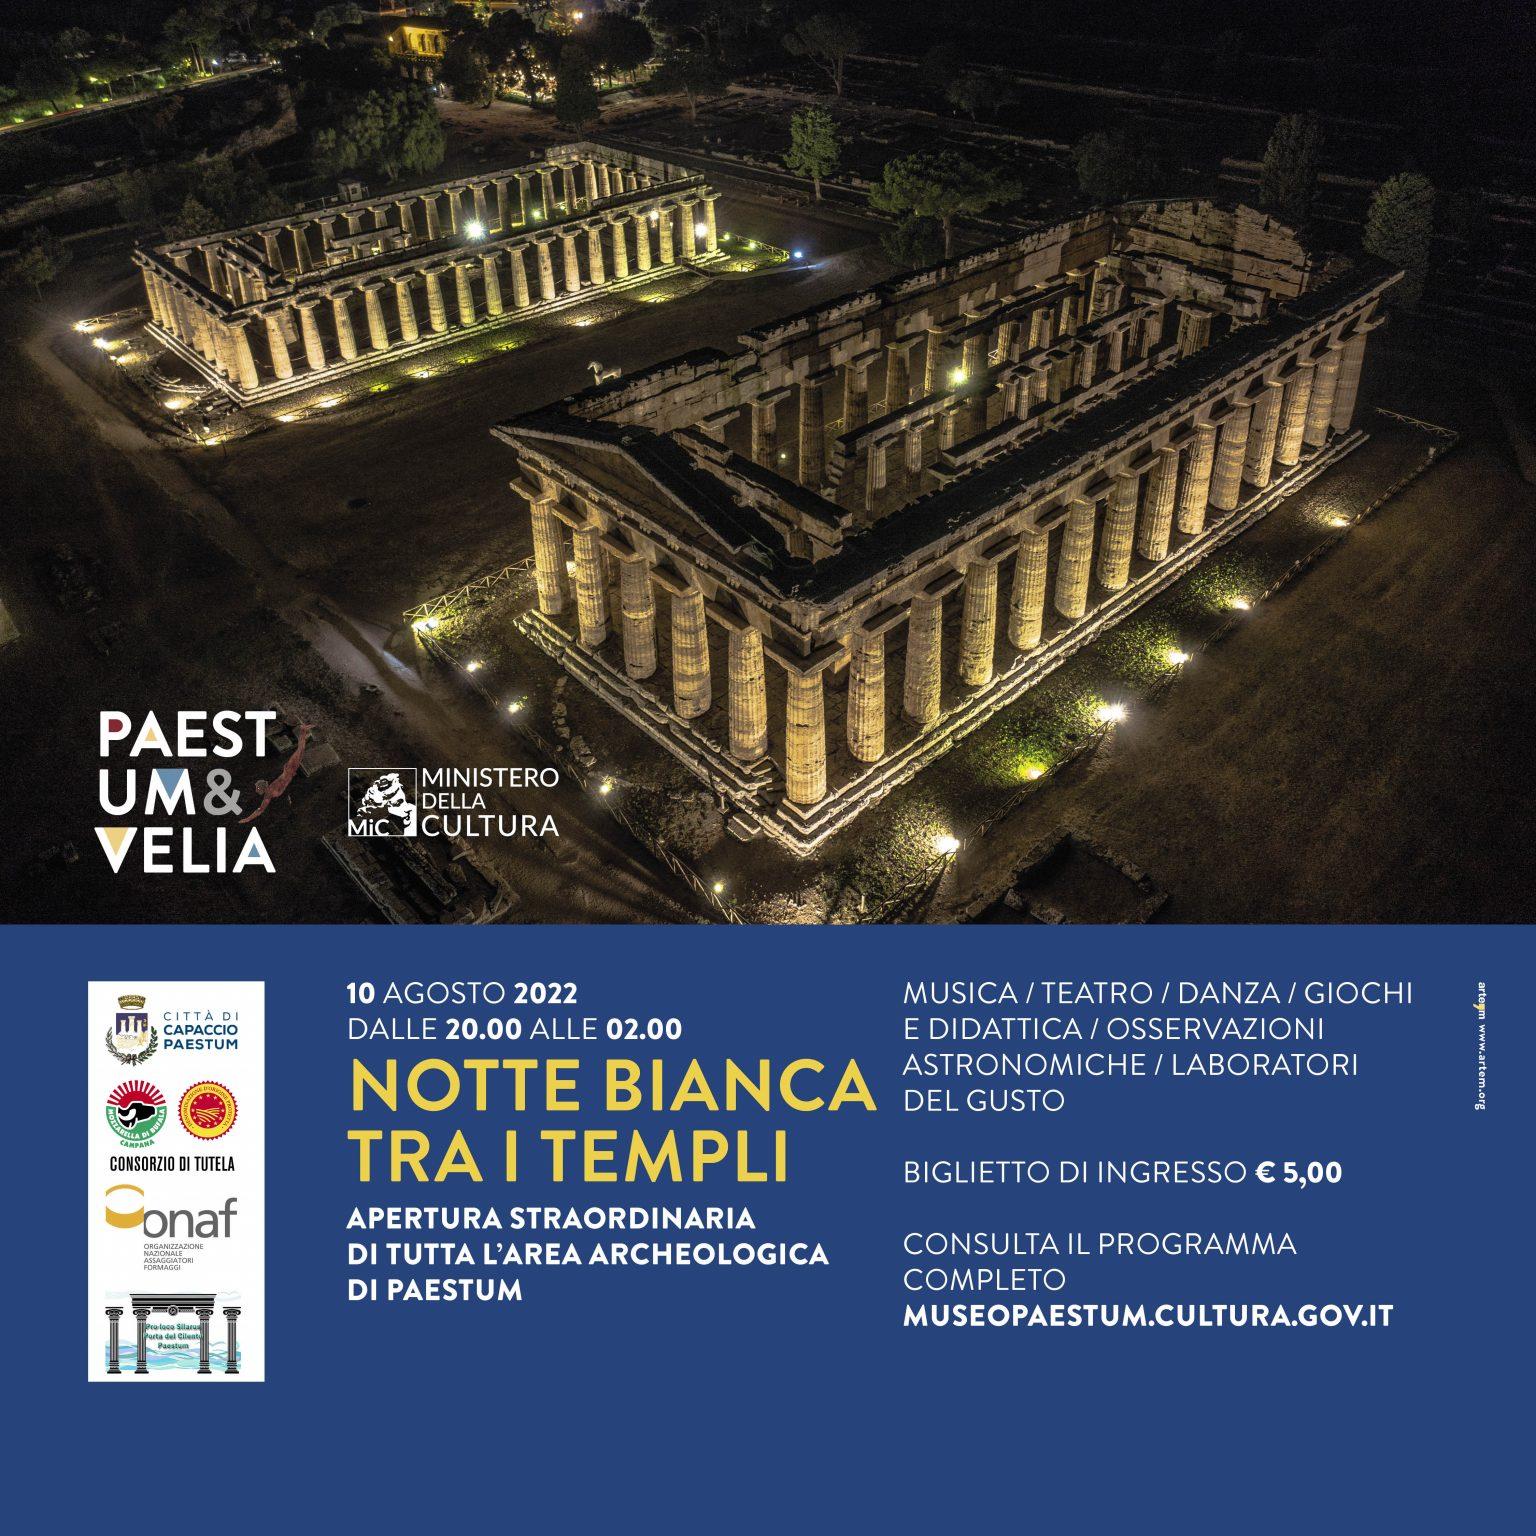 Paestum si prepara alla “Notte Bianca tra i templi”